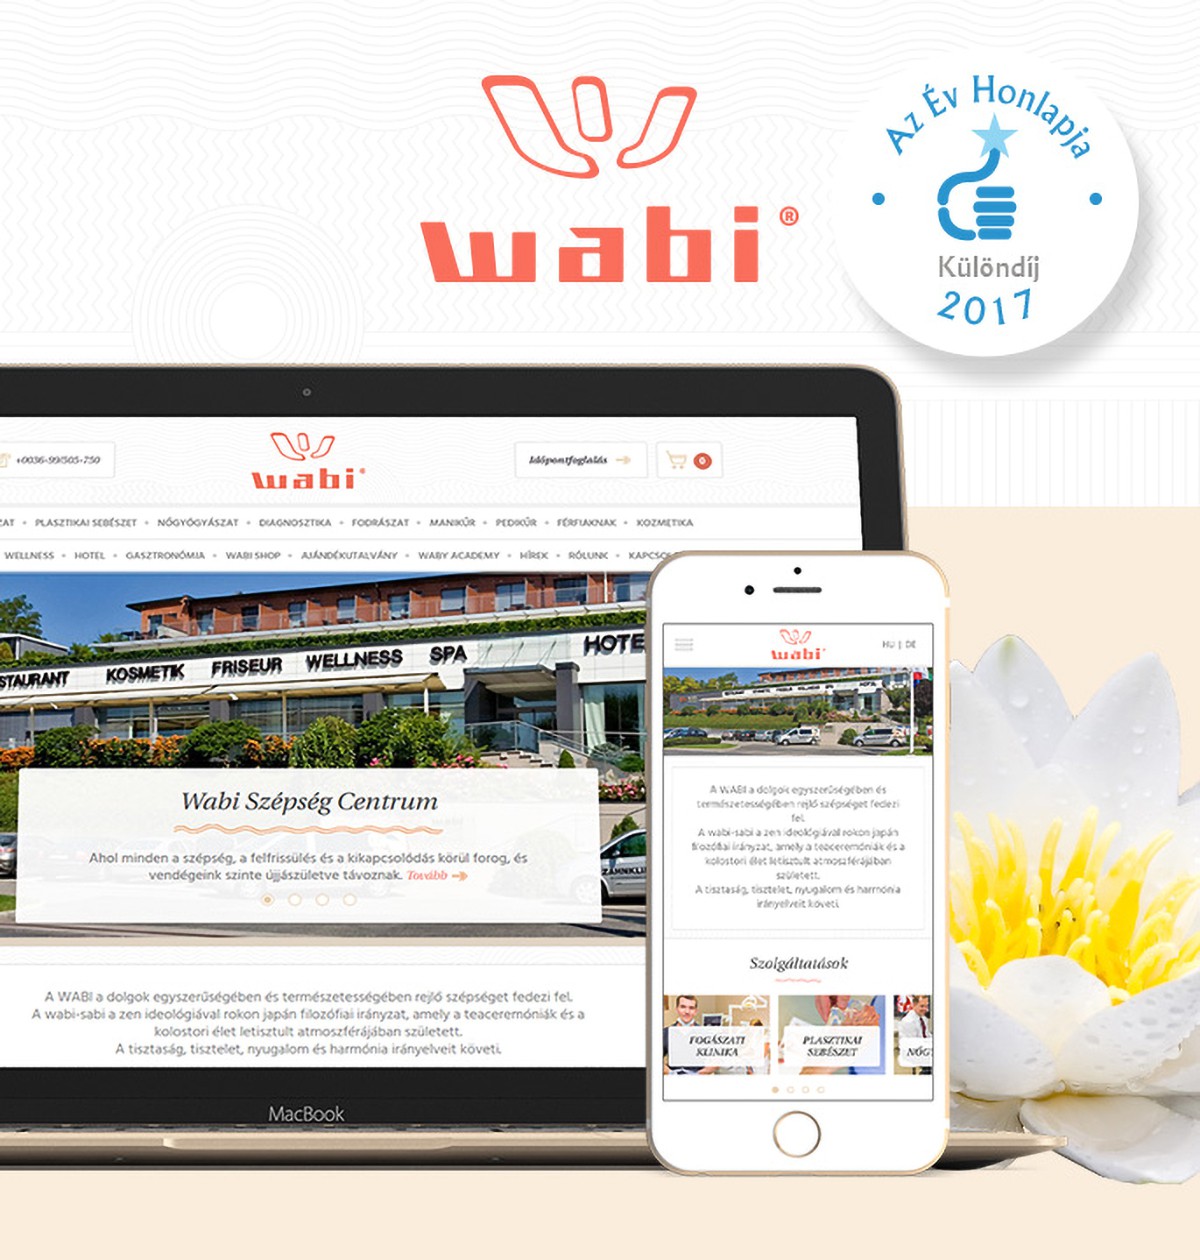 Év honlapja díjazott lett a Wabi.hu